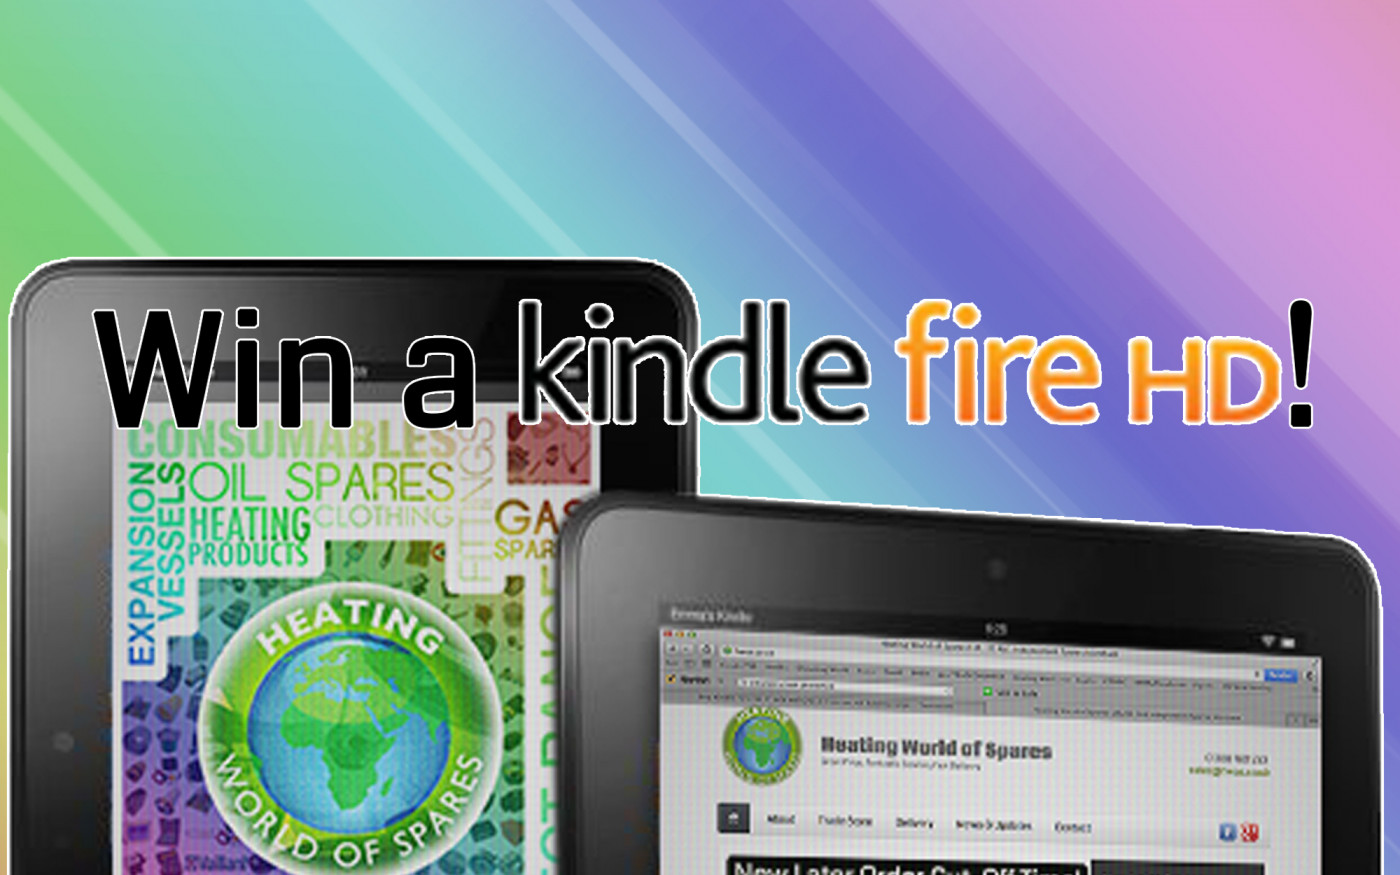 Win a Kindle Fire HD!